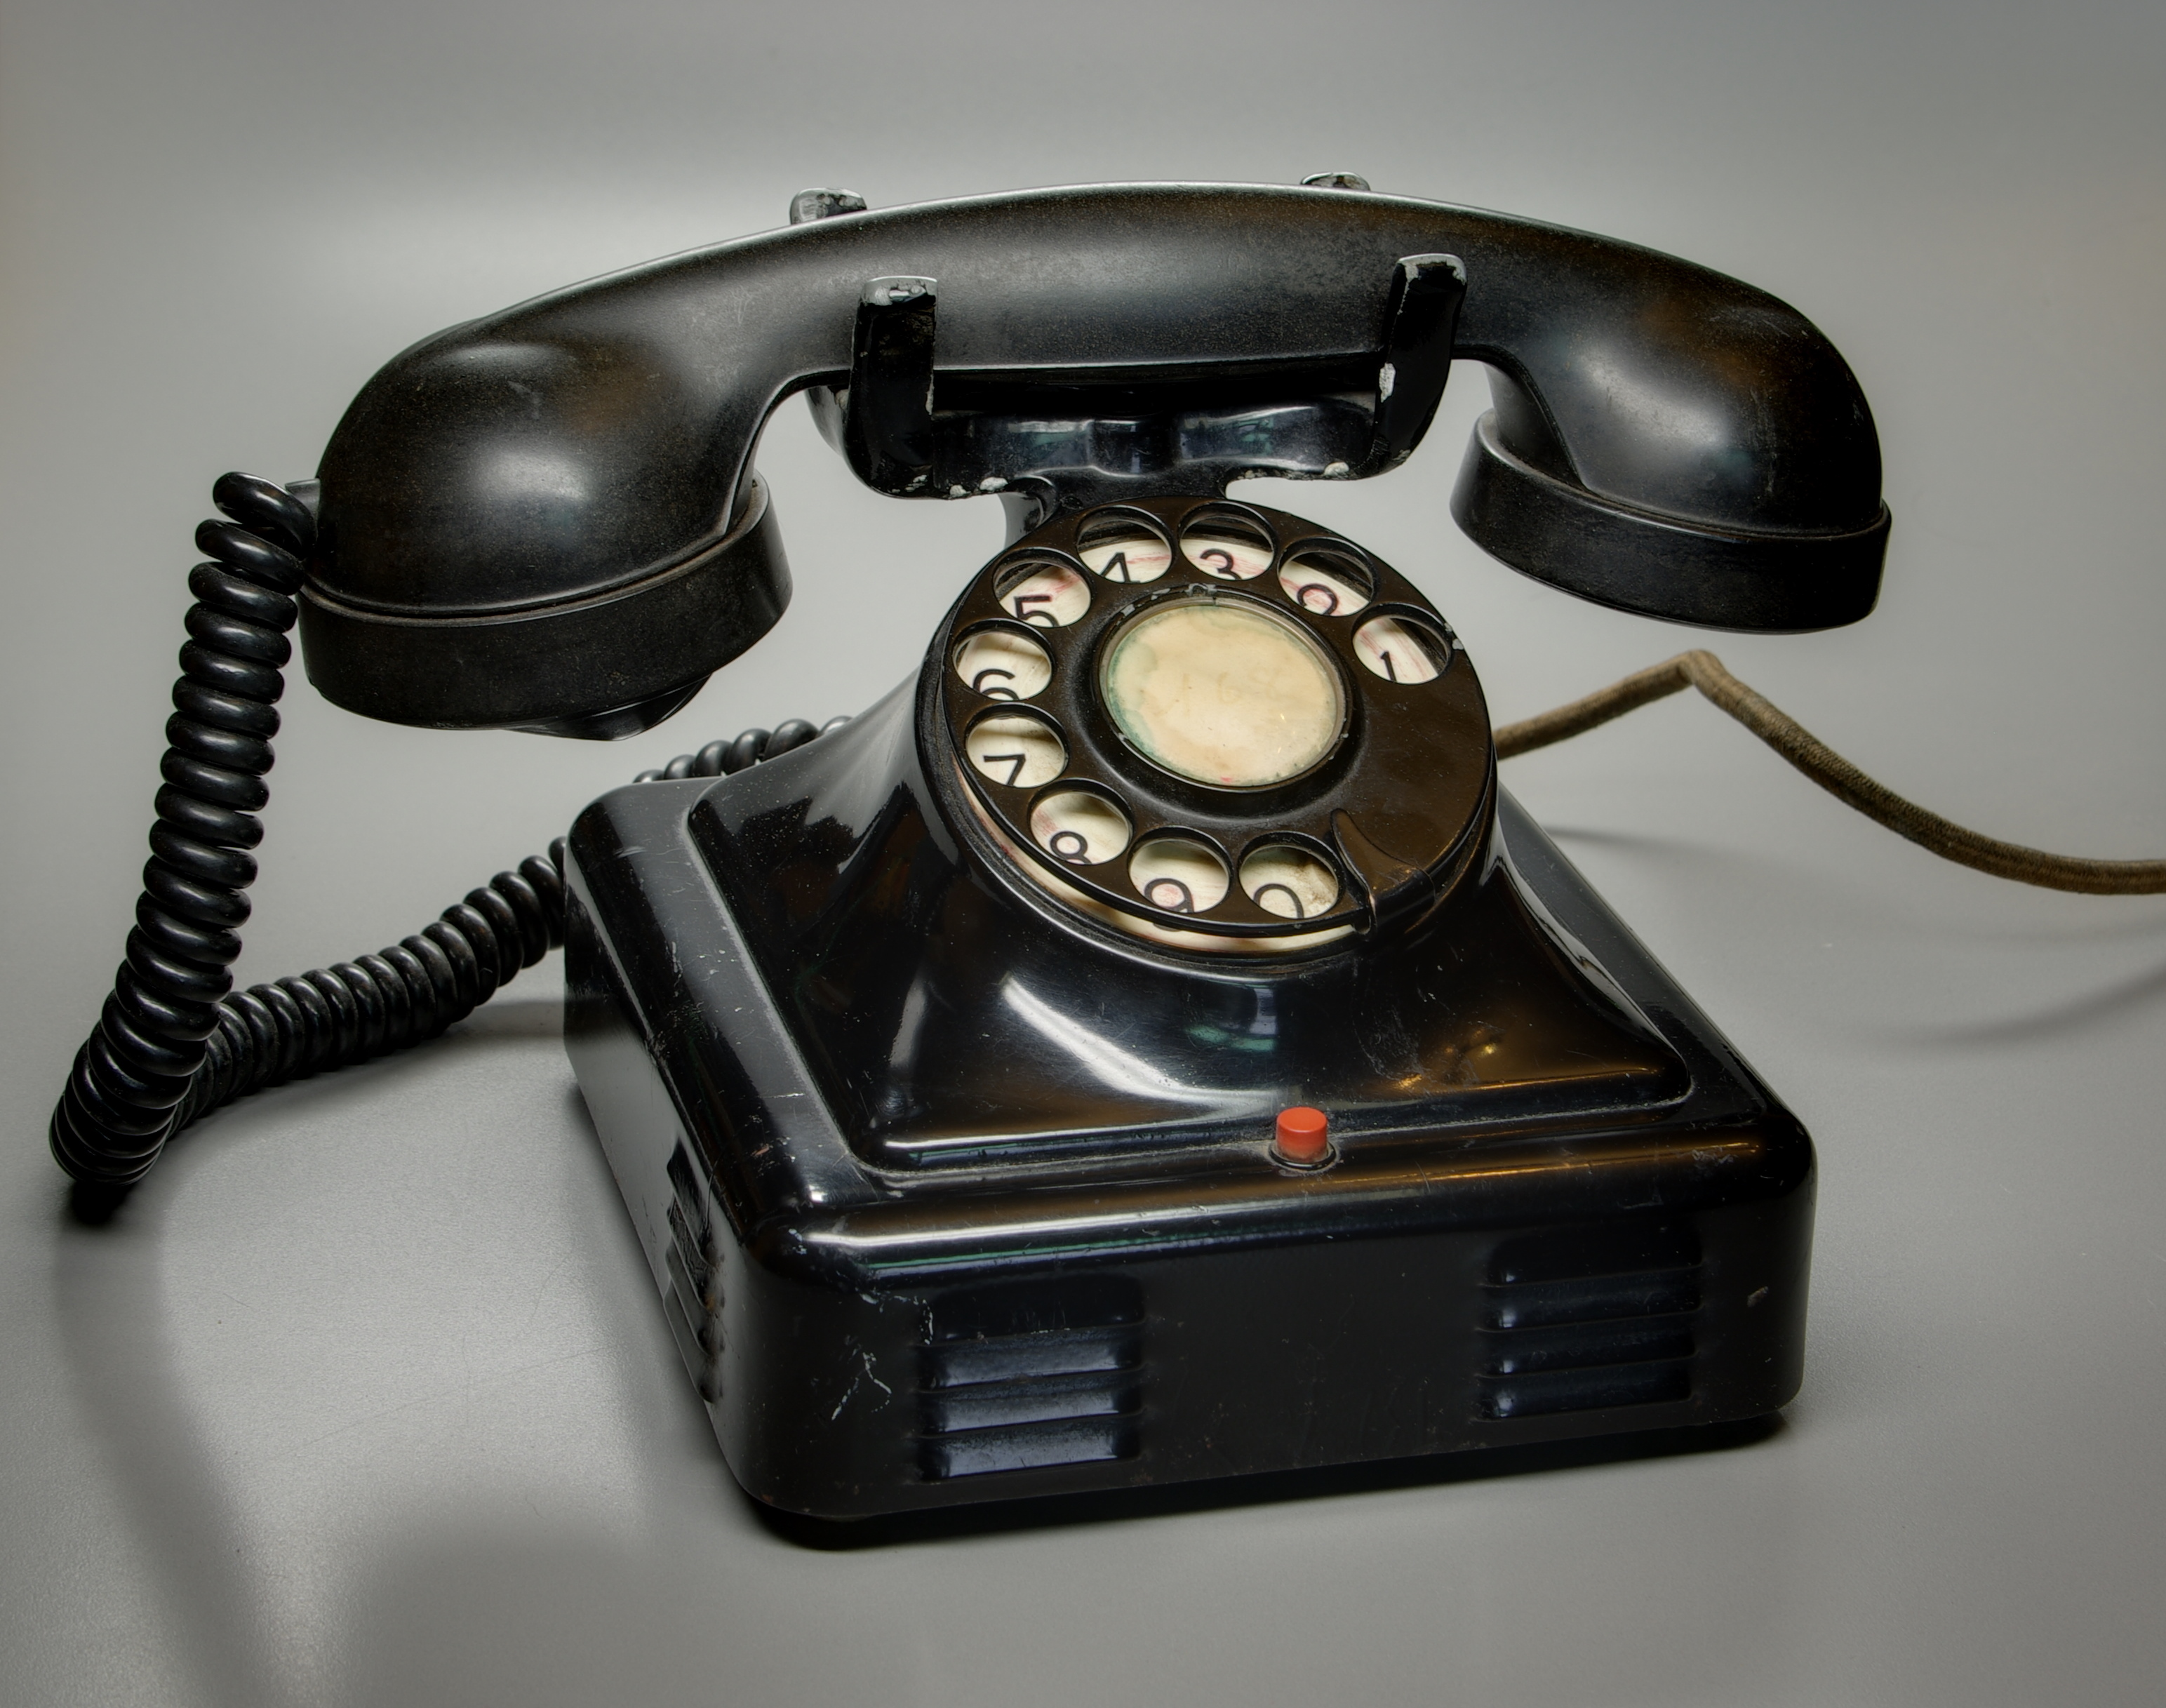 File:Telefon BW 2012-02-18 13-44-32.JPG - Wikimedia Commons